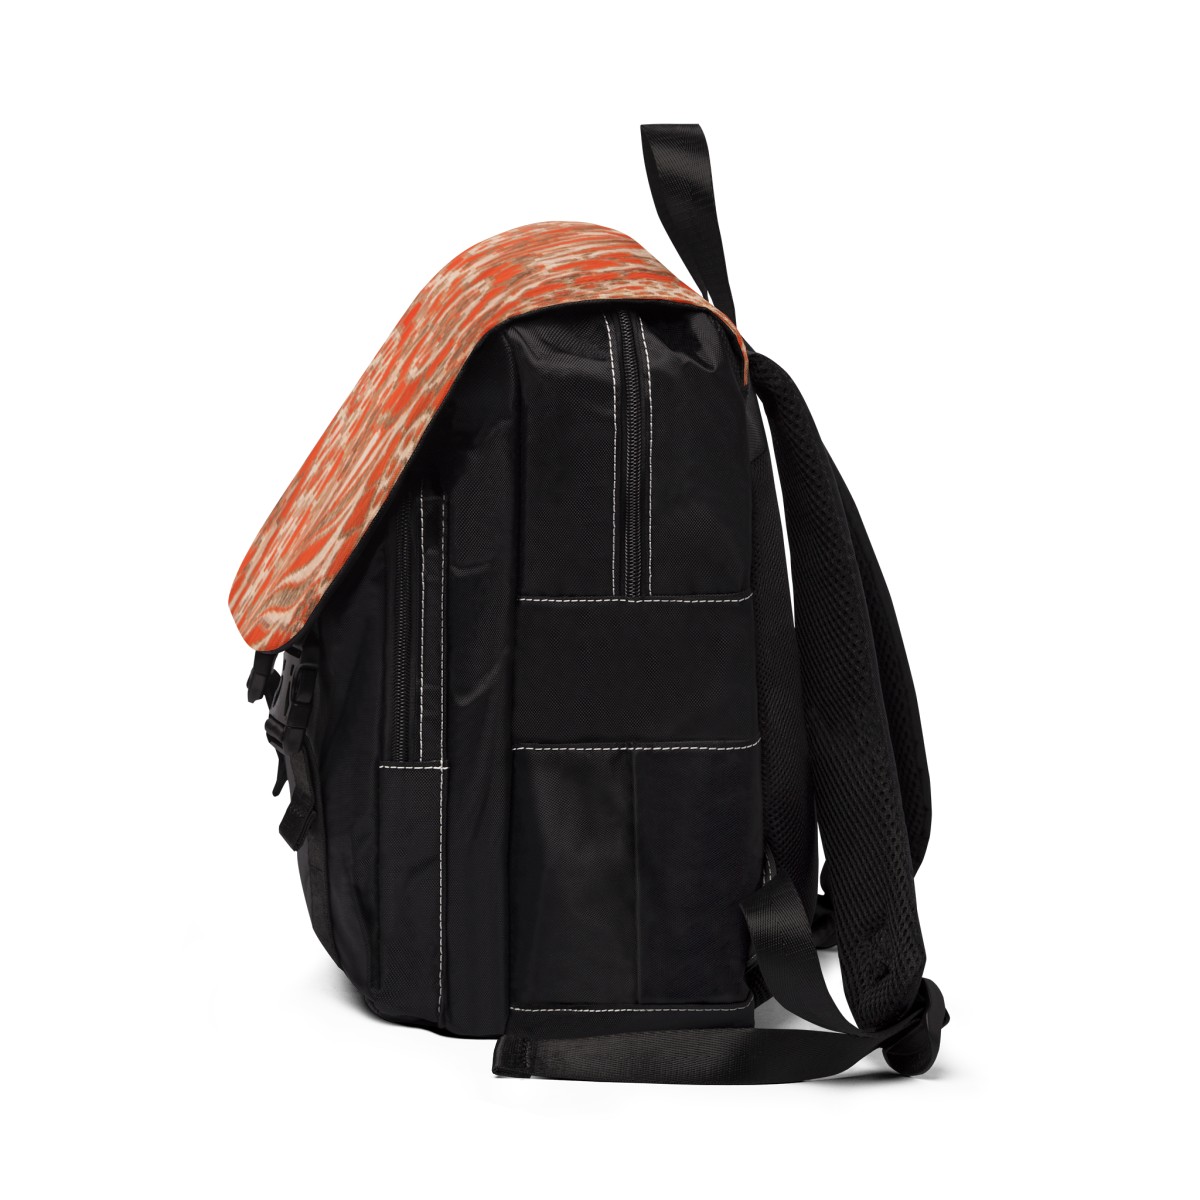 Backpack Orange Paisley product thumbnail image